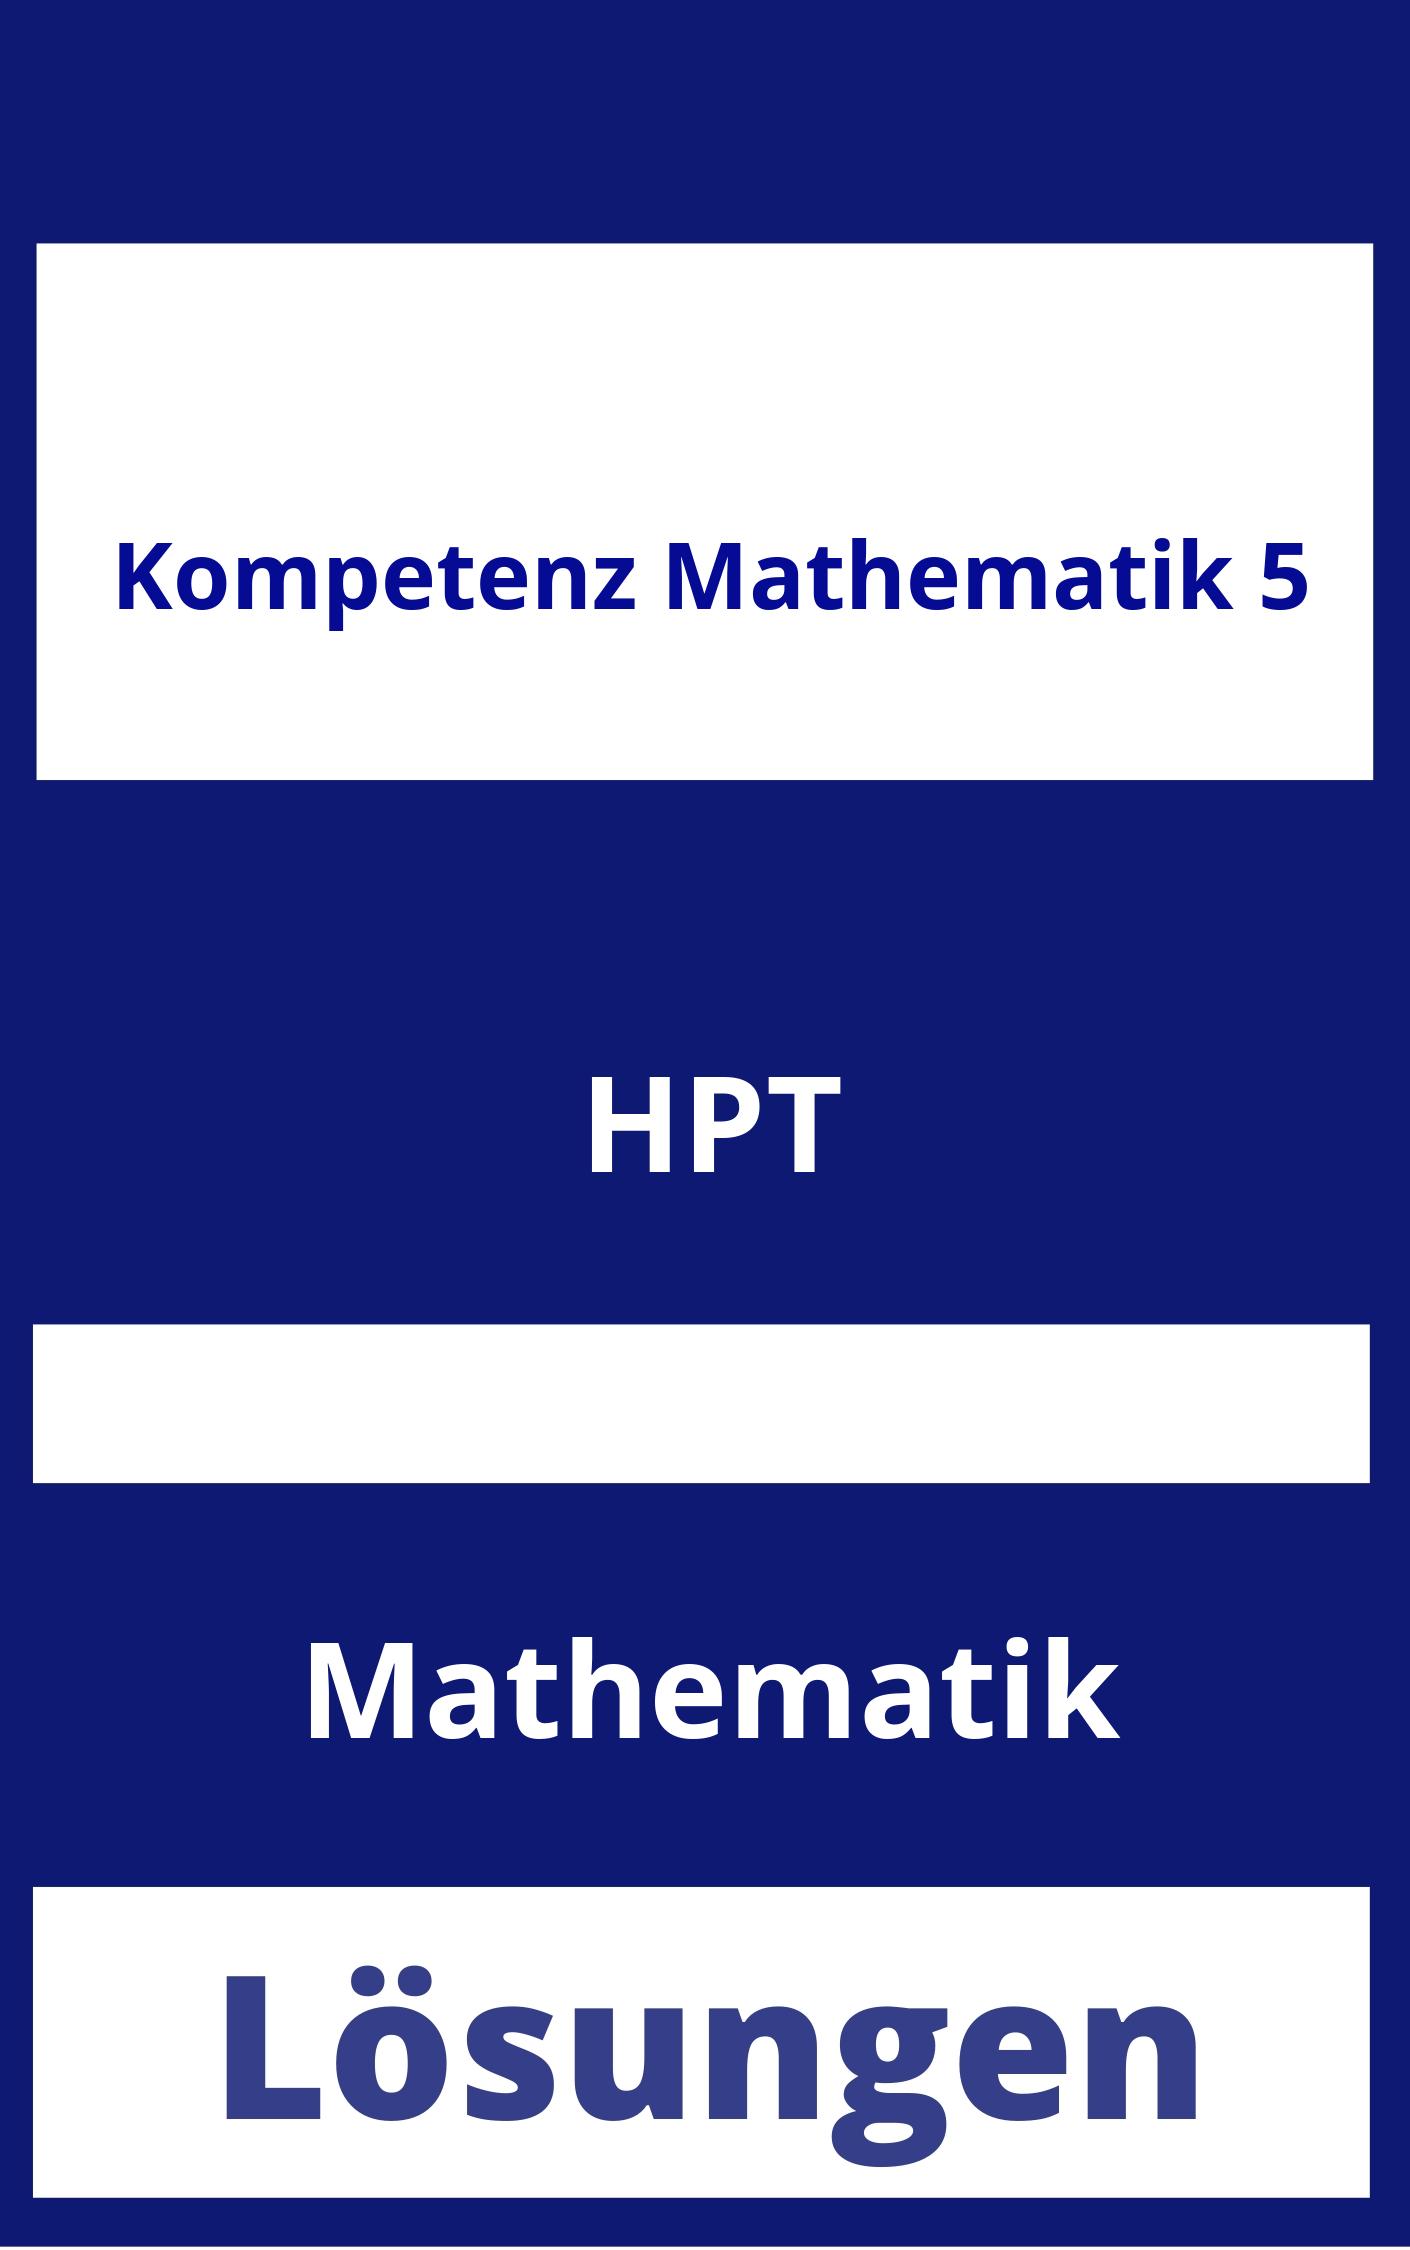 Kompetenz Mathematik 5